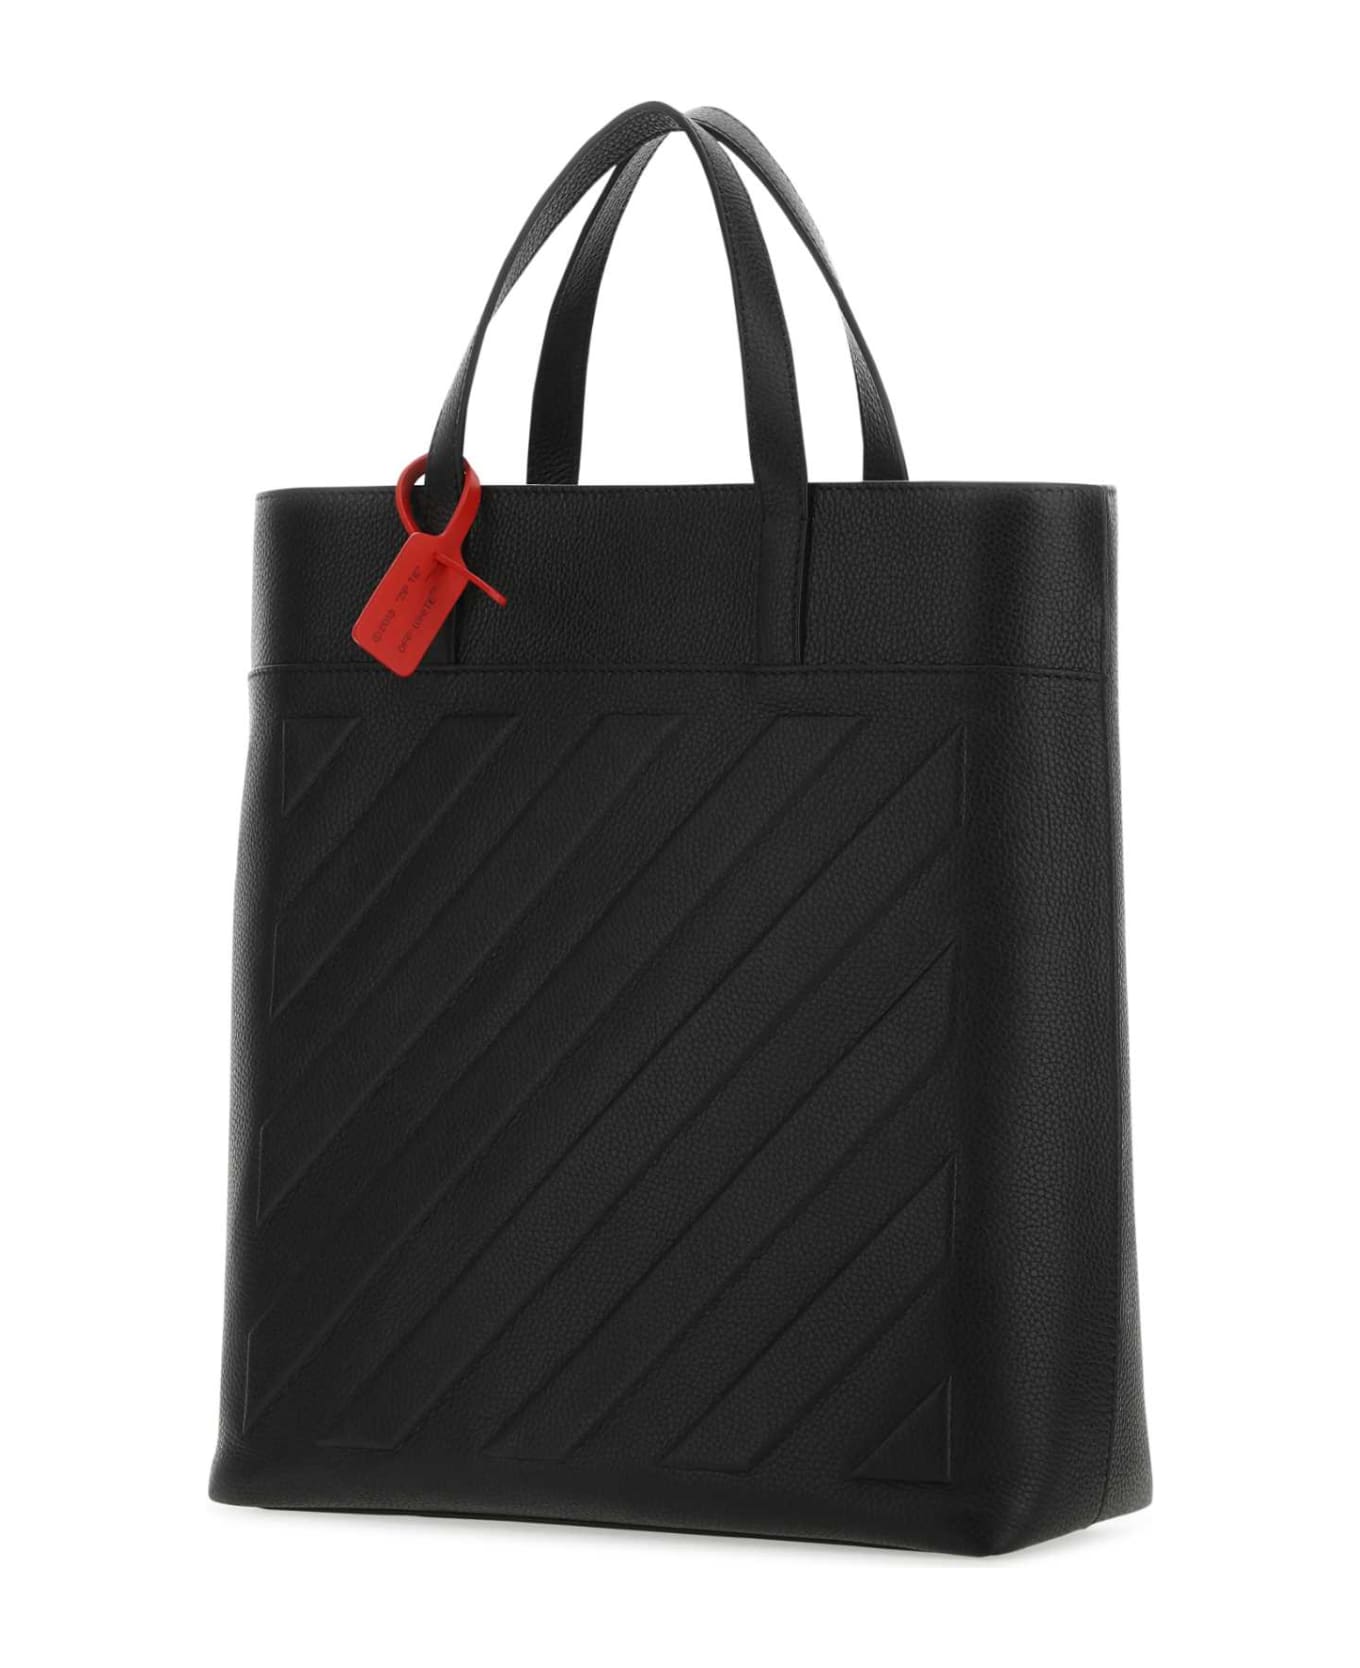 Off-White Black Leather Binder Shopping Bag - BLACKNOCOLOR トートバッグ